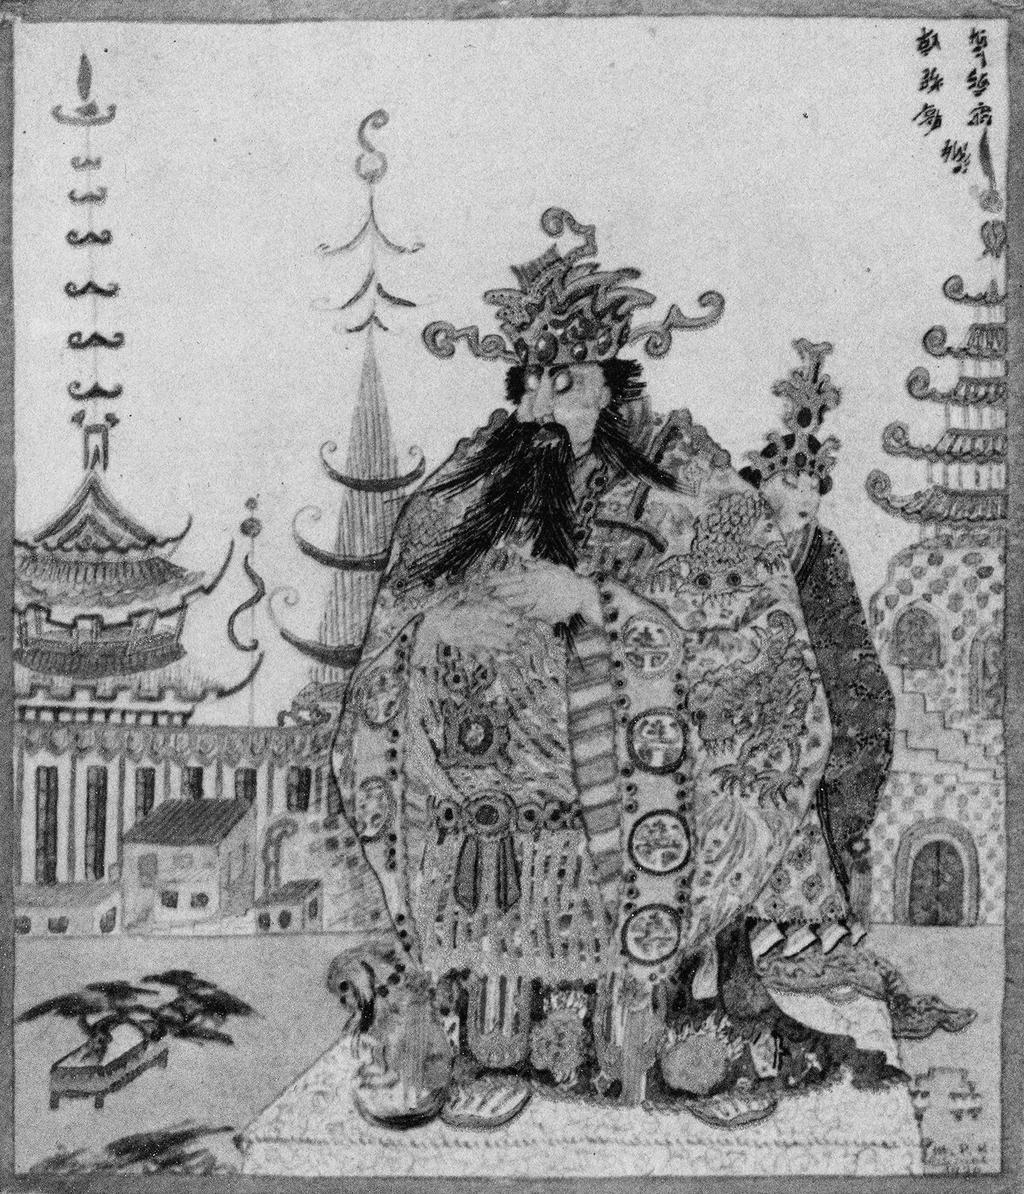 Watercolor from Der Mantel der Träume: Chinesische